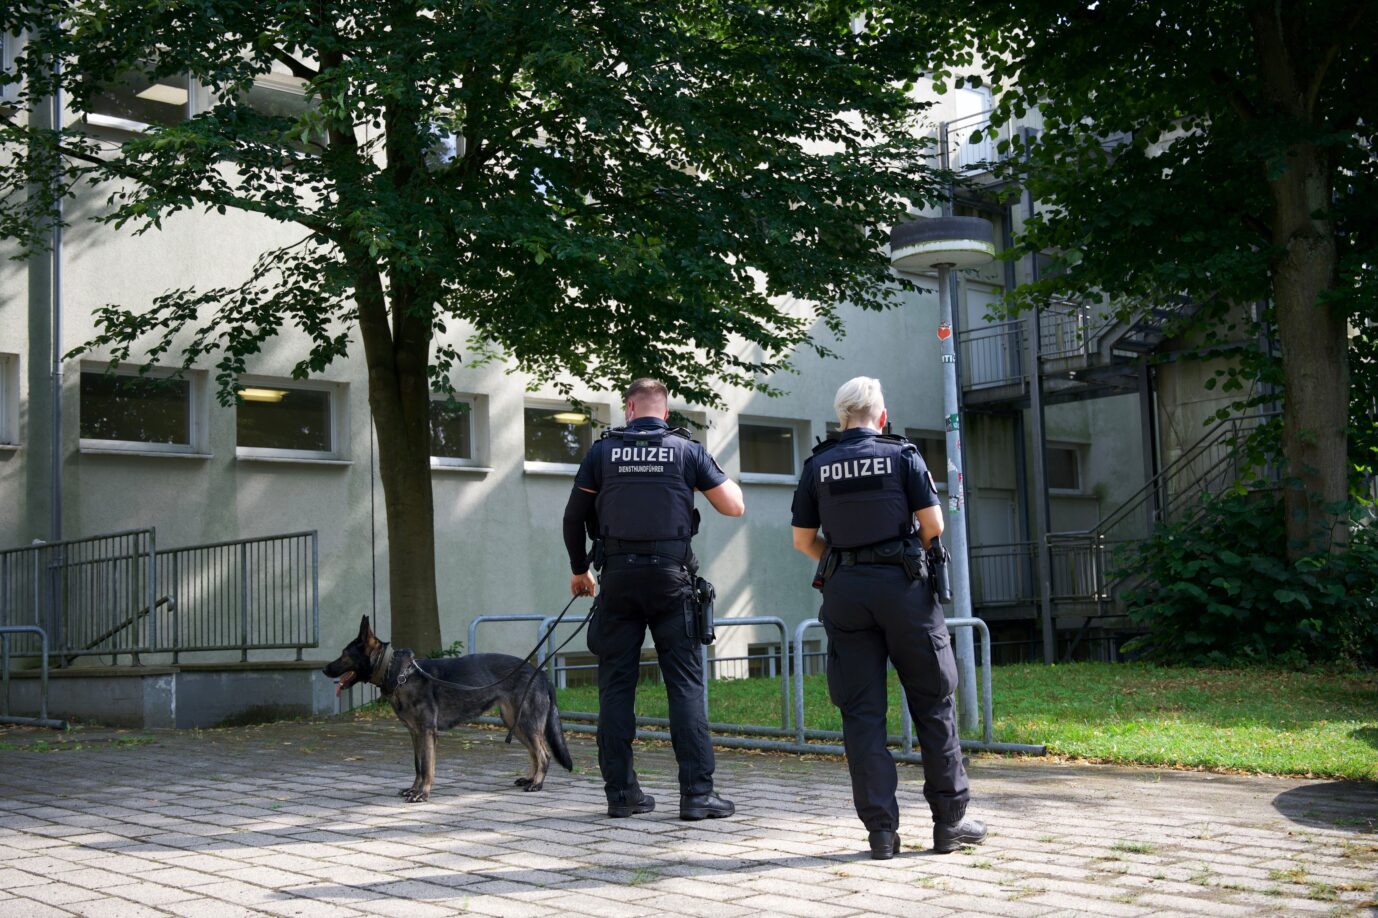 An einer Volkshochschule in Wedel bei Hamburg wird ein 67jähriger Lehrer schwer verletzt. Kurz darauf nimmt die Polizei vier Syrer fest. Die sind jetzt wieder auf freiem Fuß.